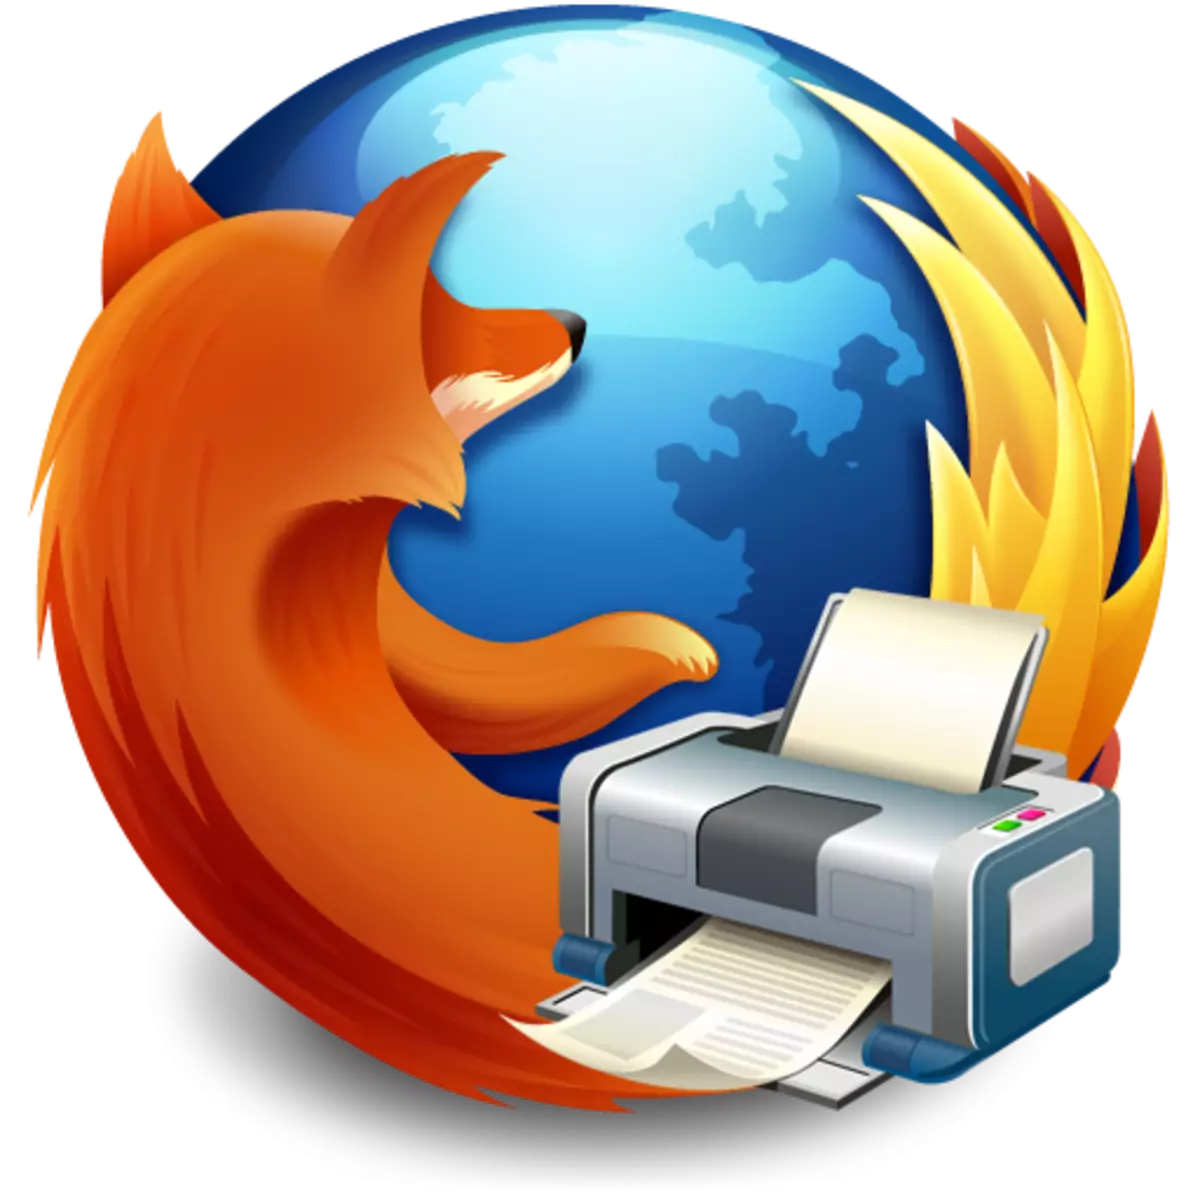 Firefox tsoo thaum luam ntawv